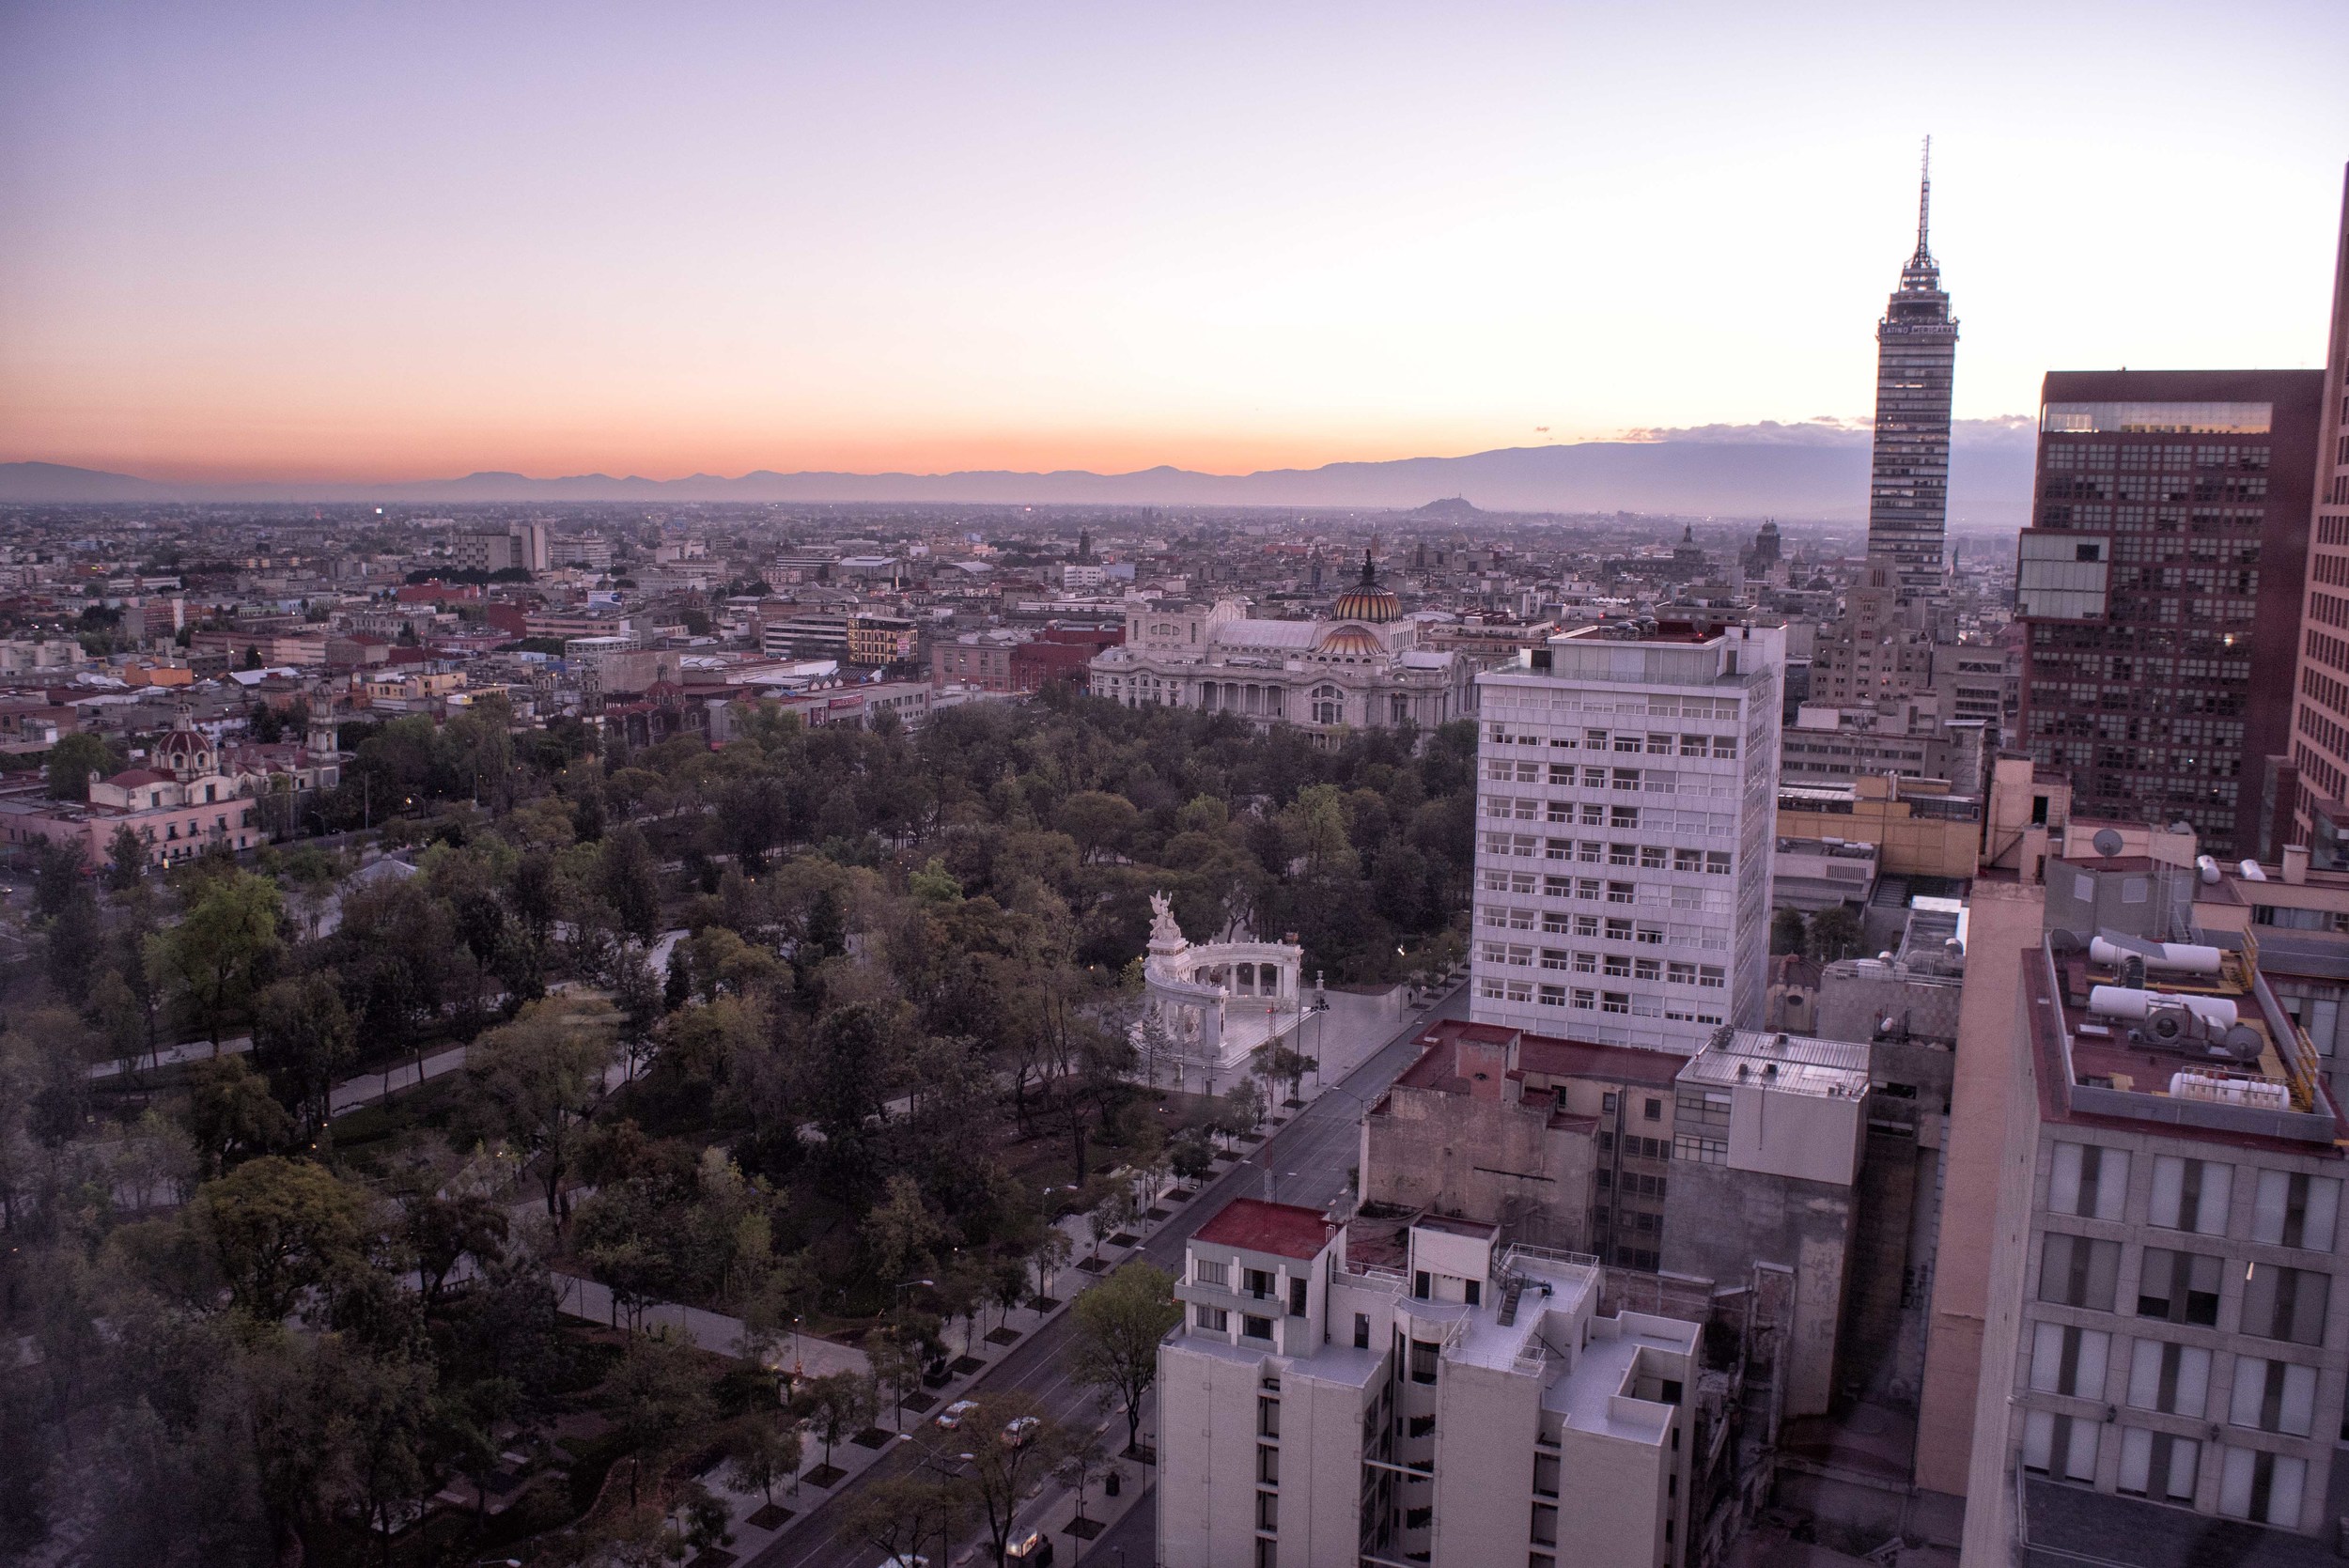  Sunrise on Ciudad de Mexico 